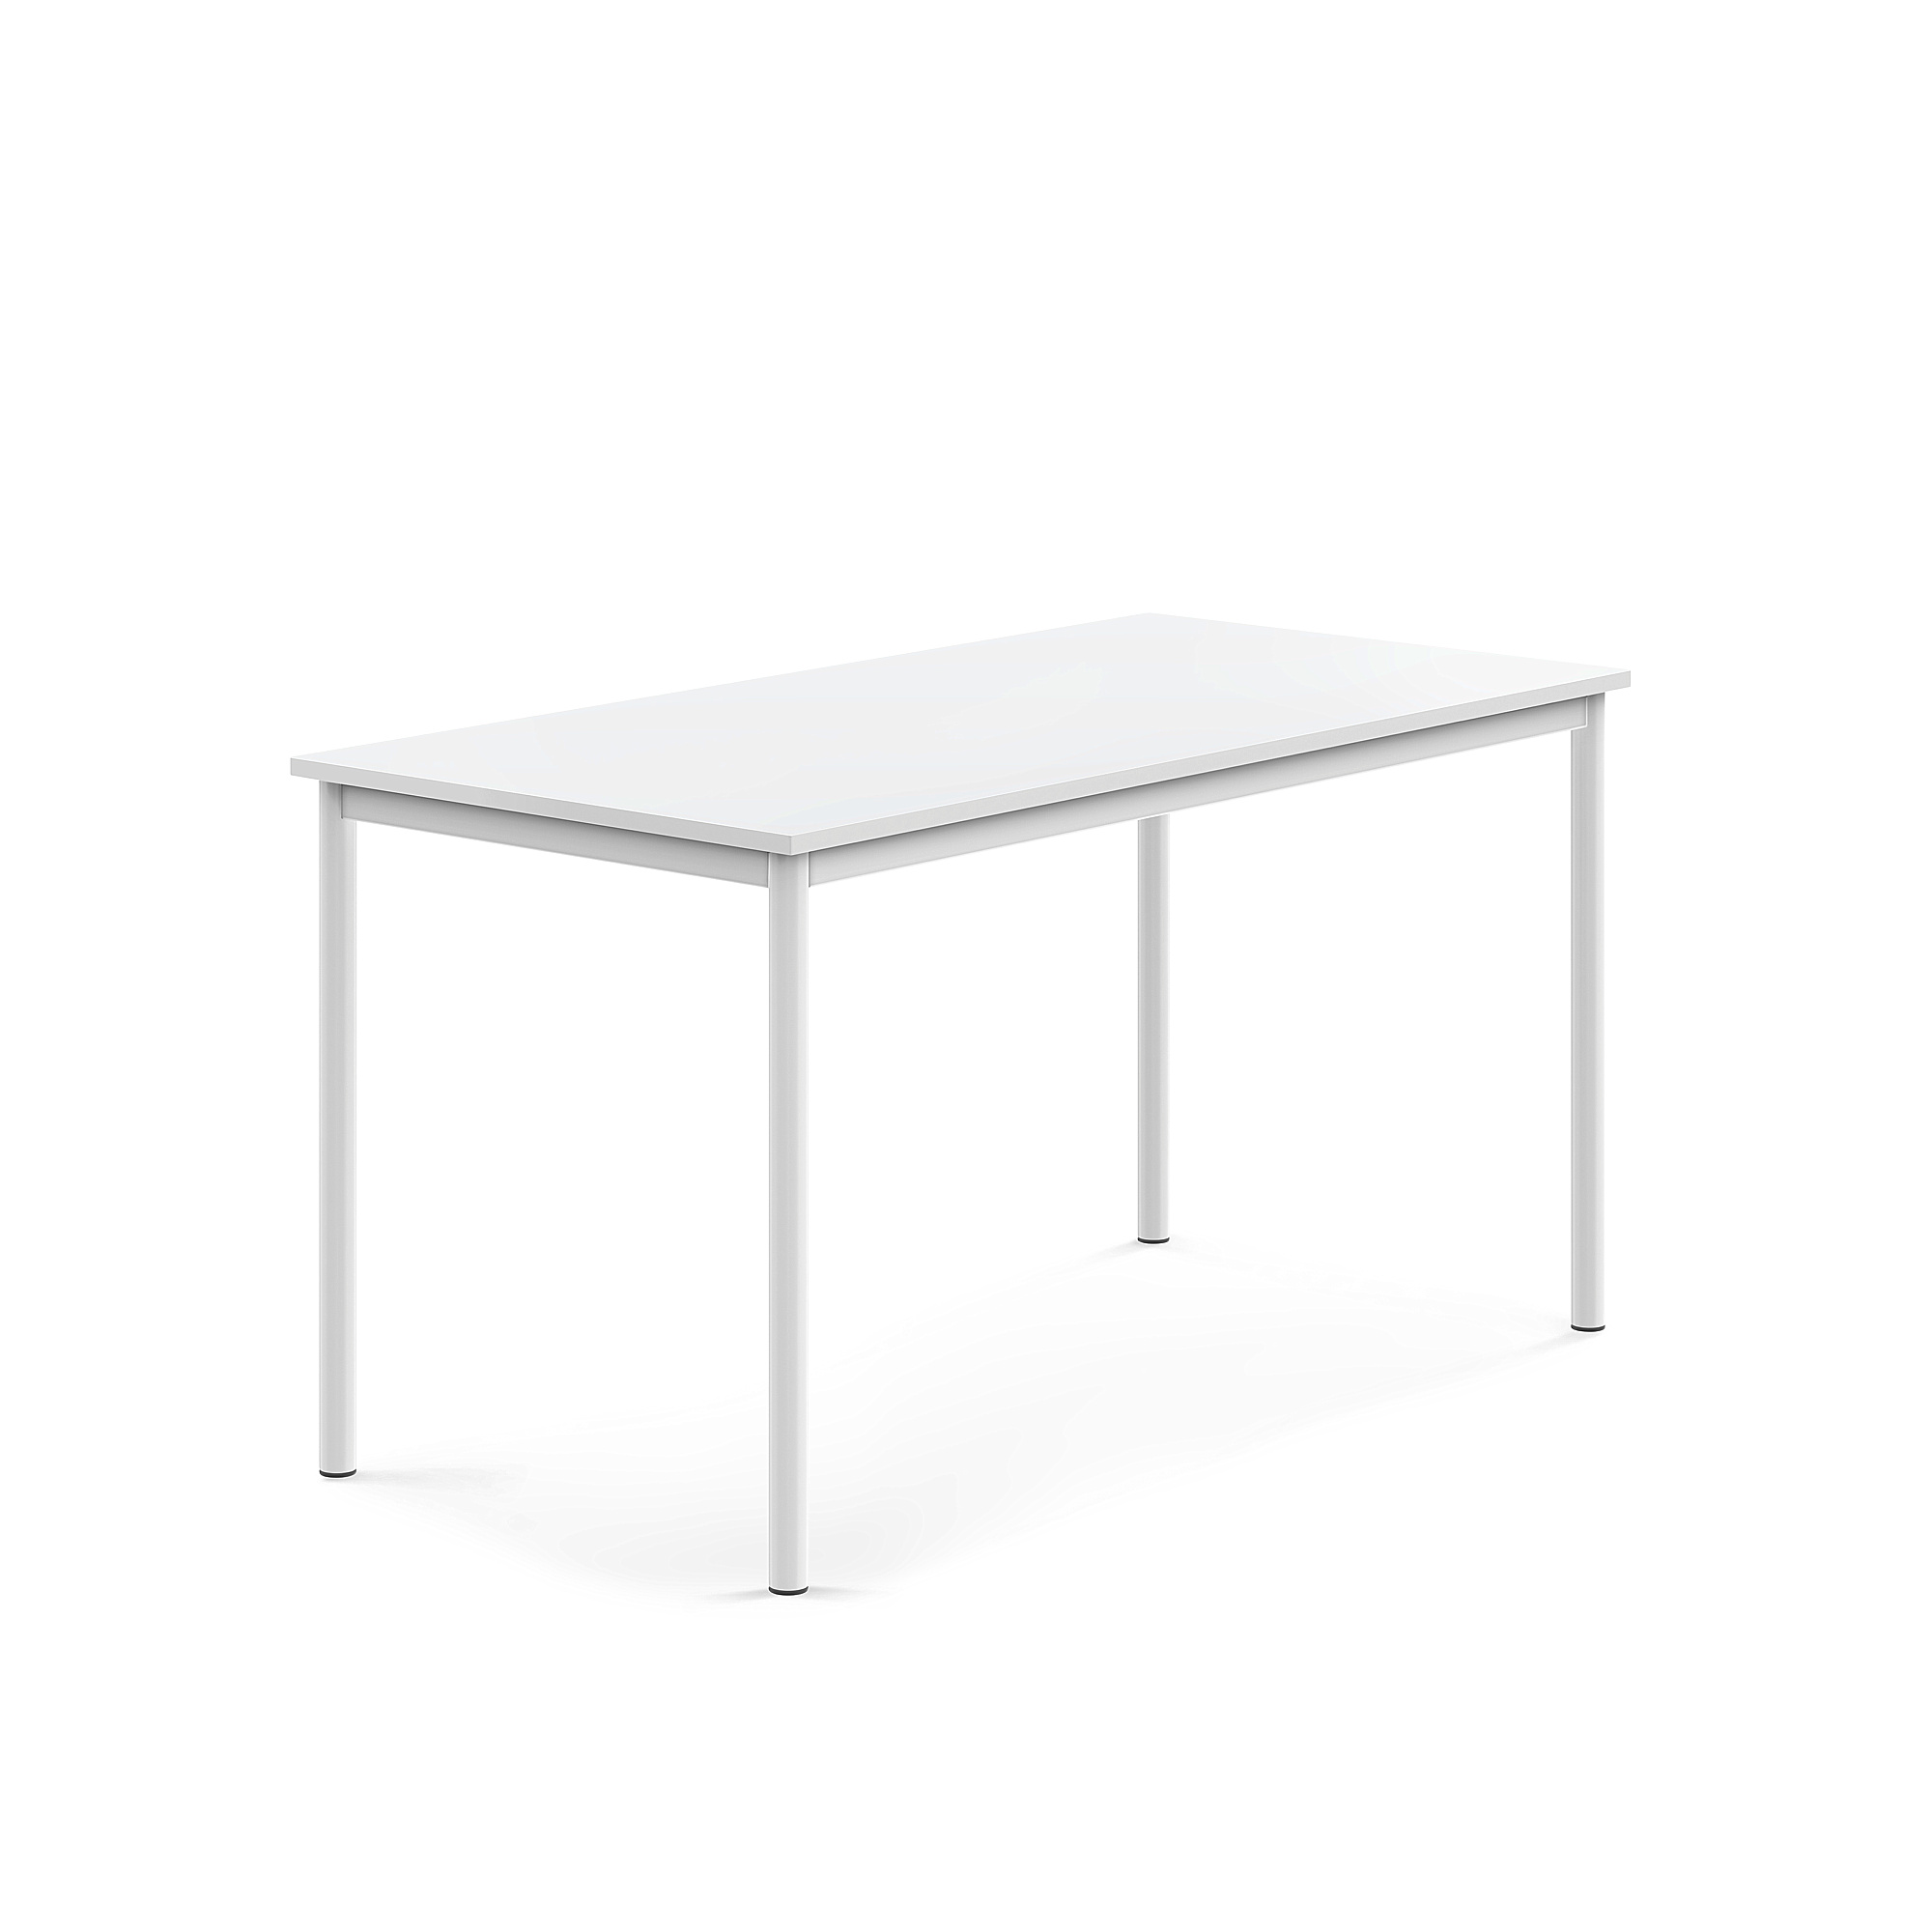 Stůl BORÅS, 1400x700x720 mm, bílé nohy, HPL deska, bílá